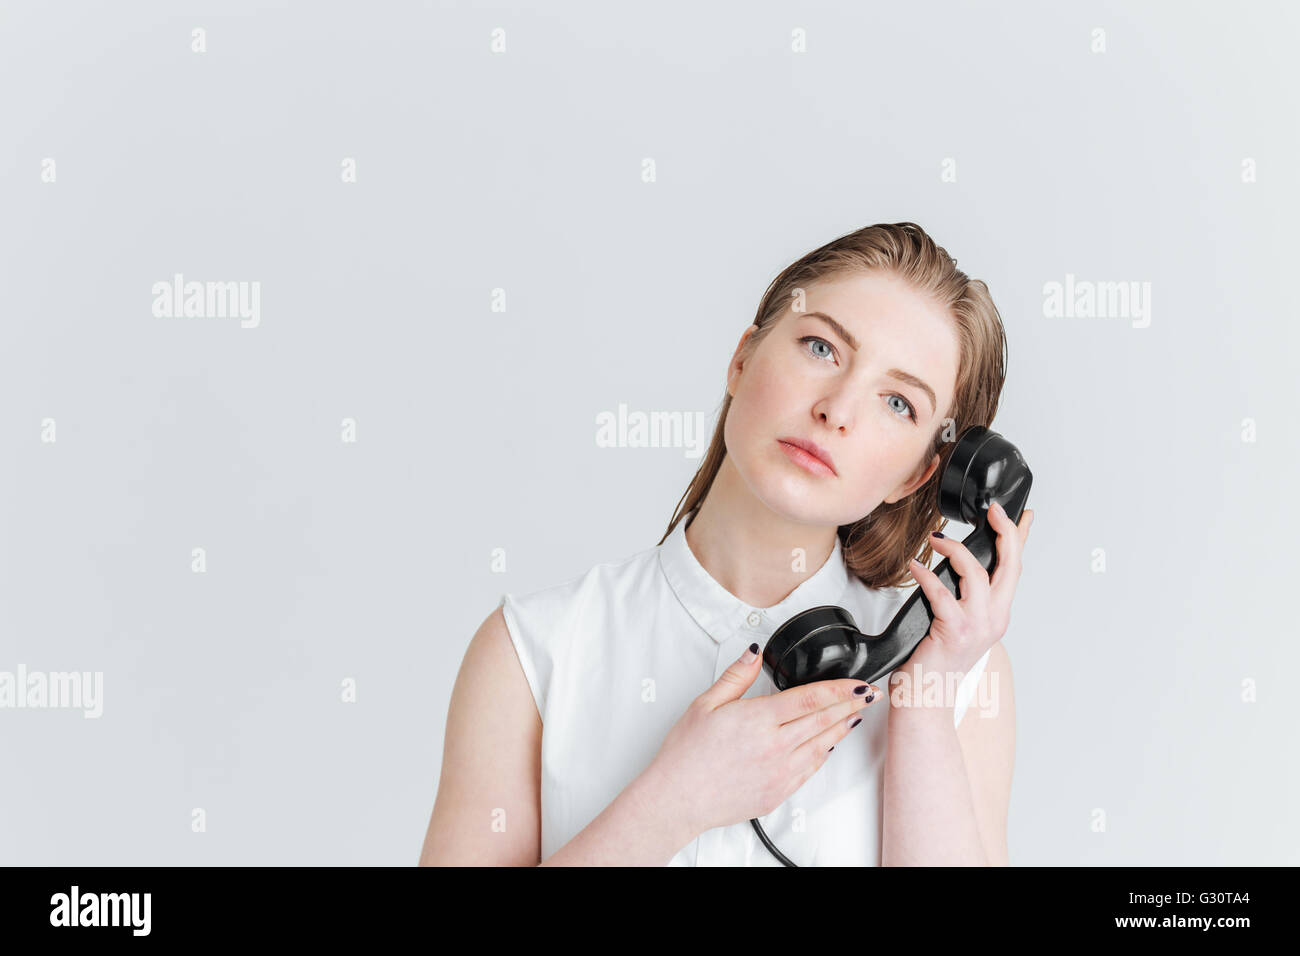 Jeune femme avec de sking holding retro phone tube et looking at camera isolé sur fond blanc Banque D'Images